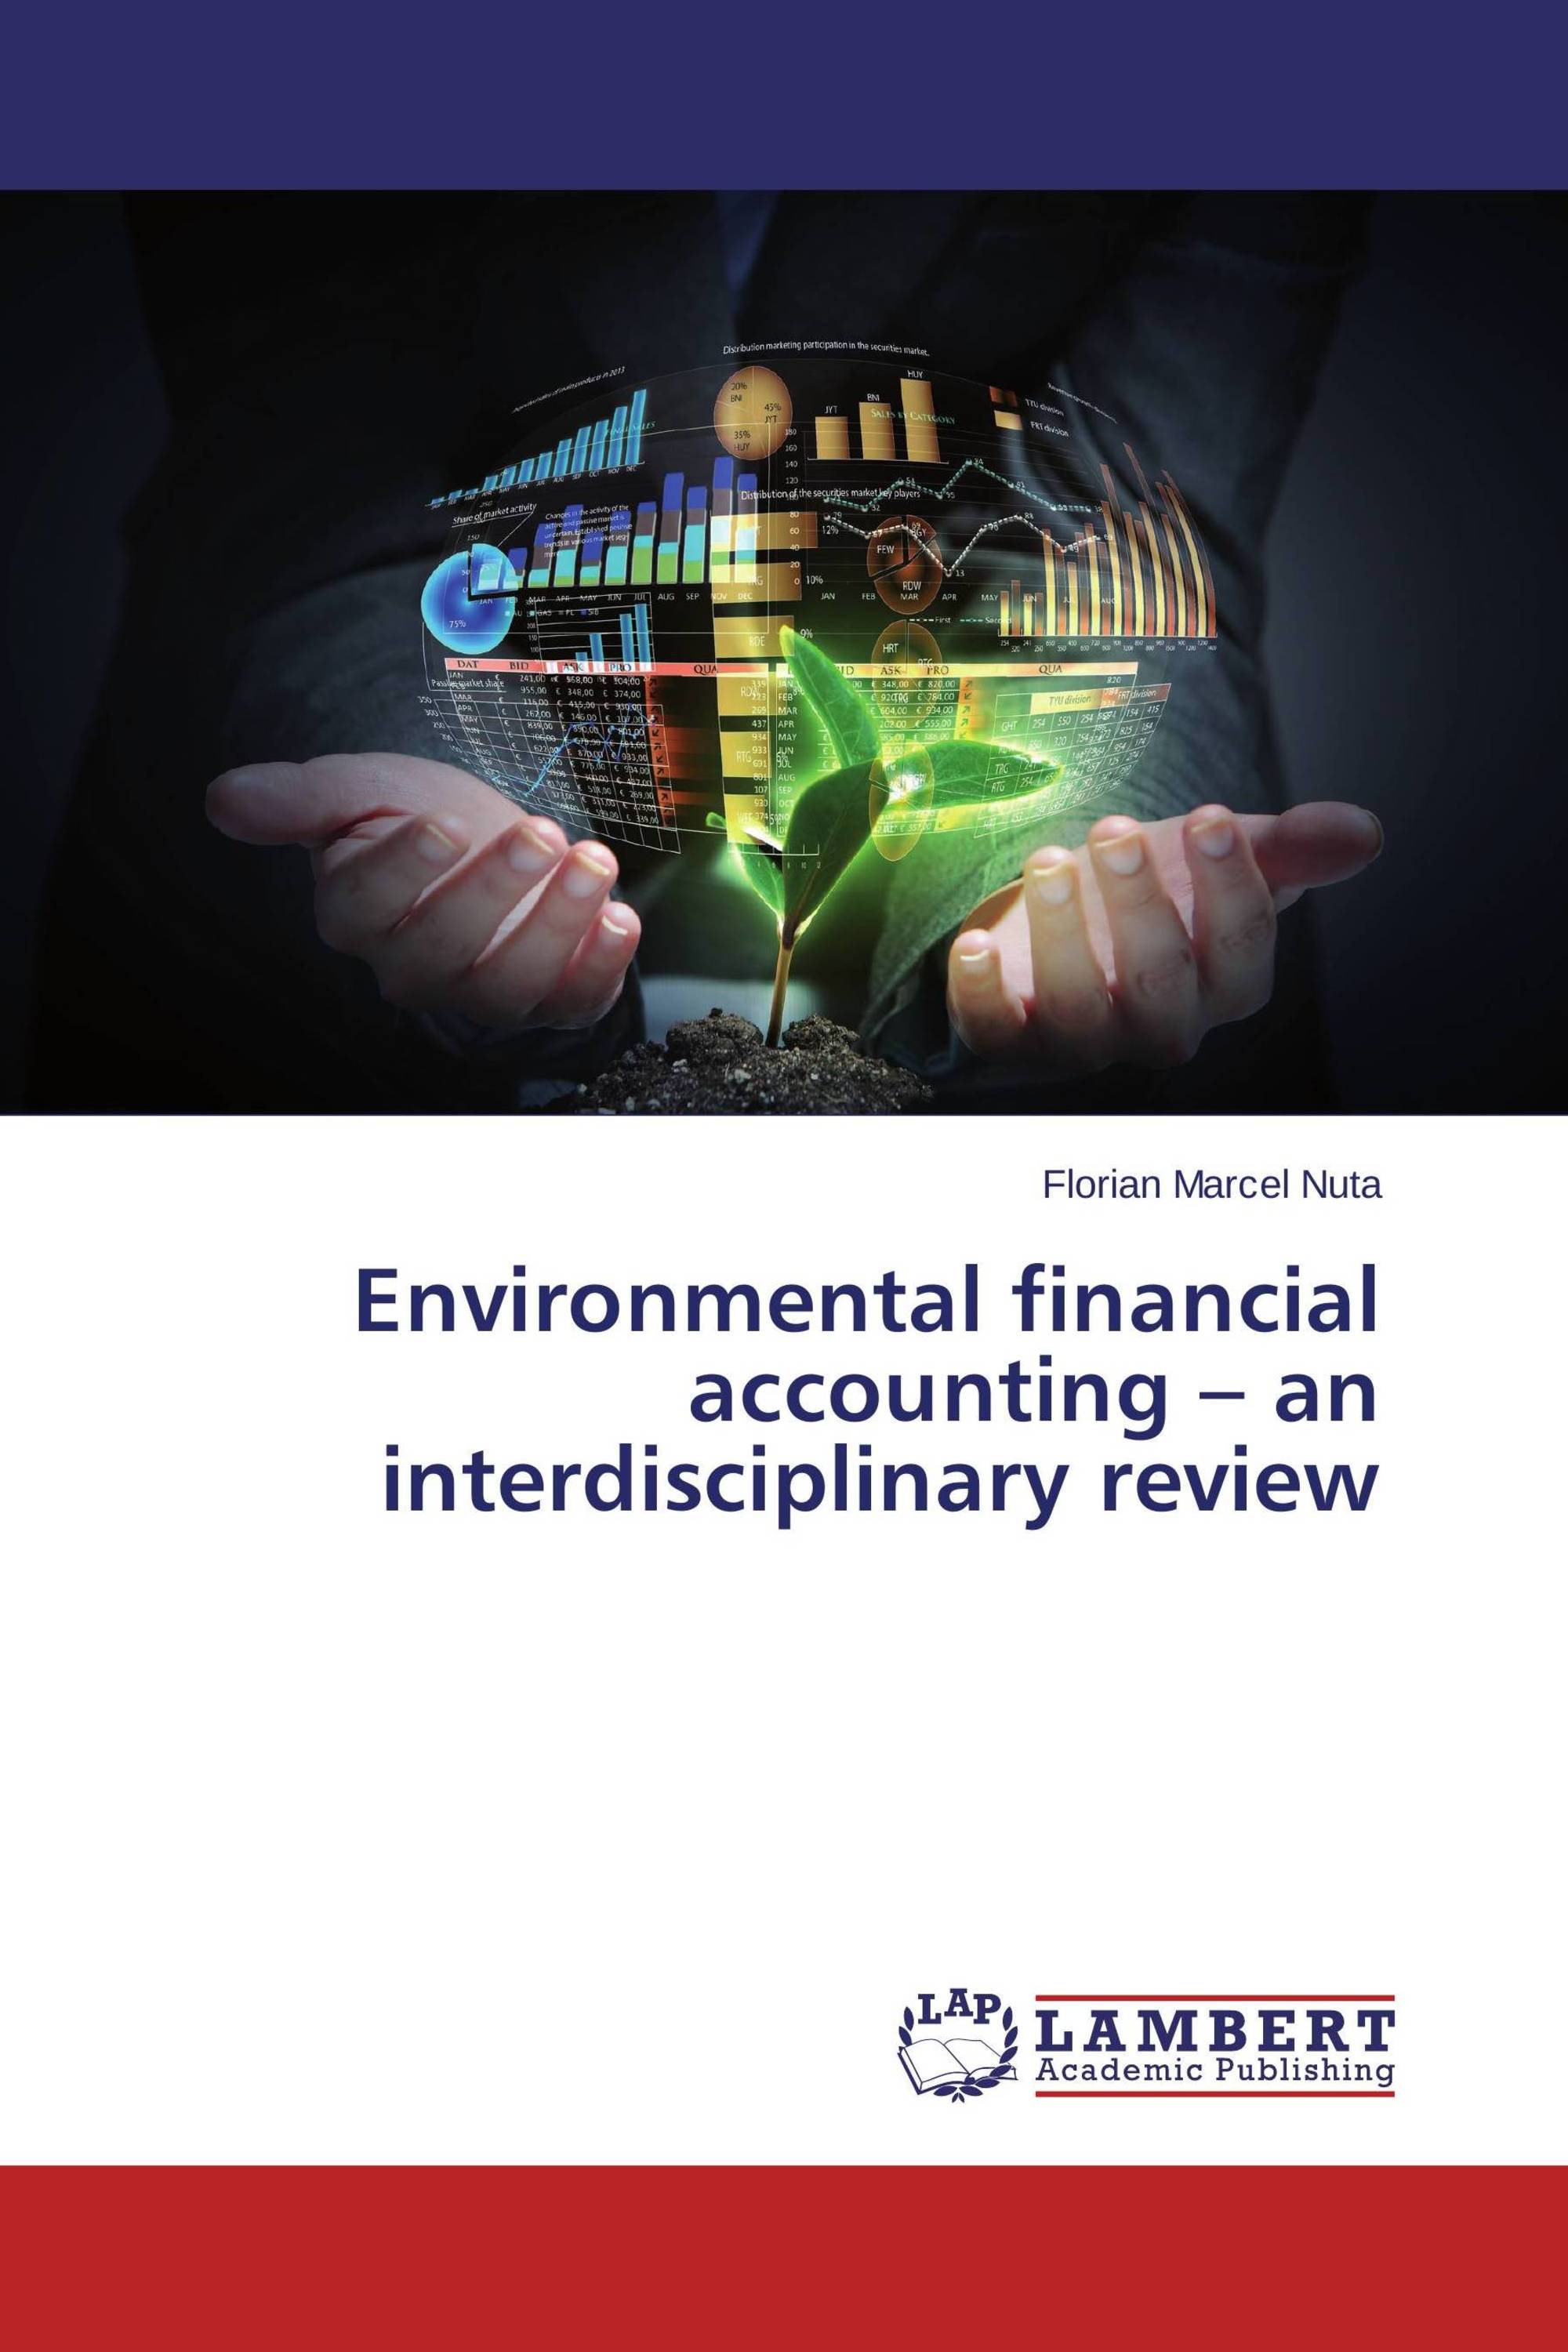 thesis environmental accounting